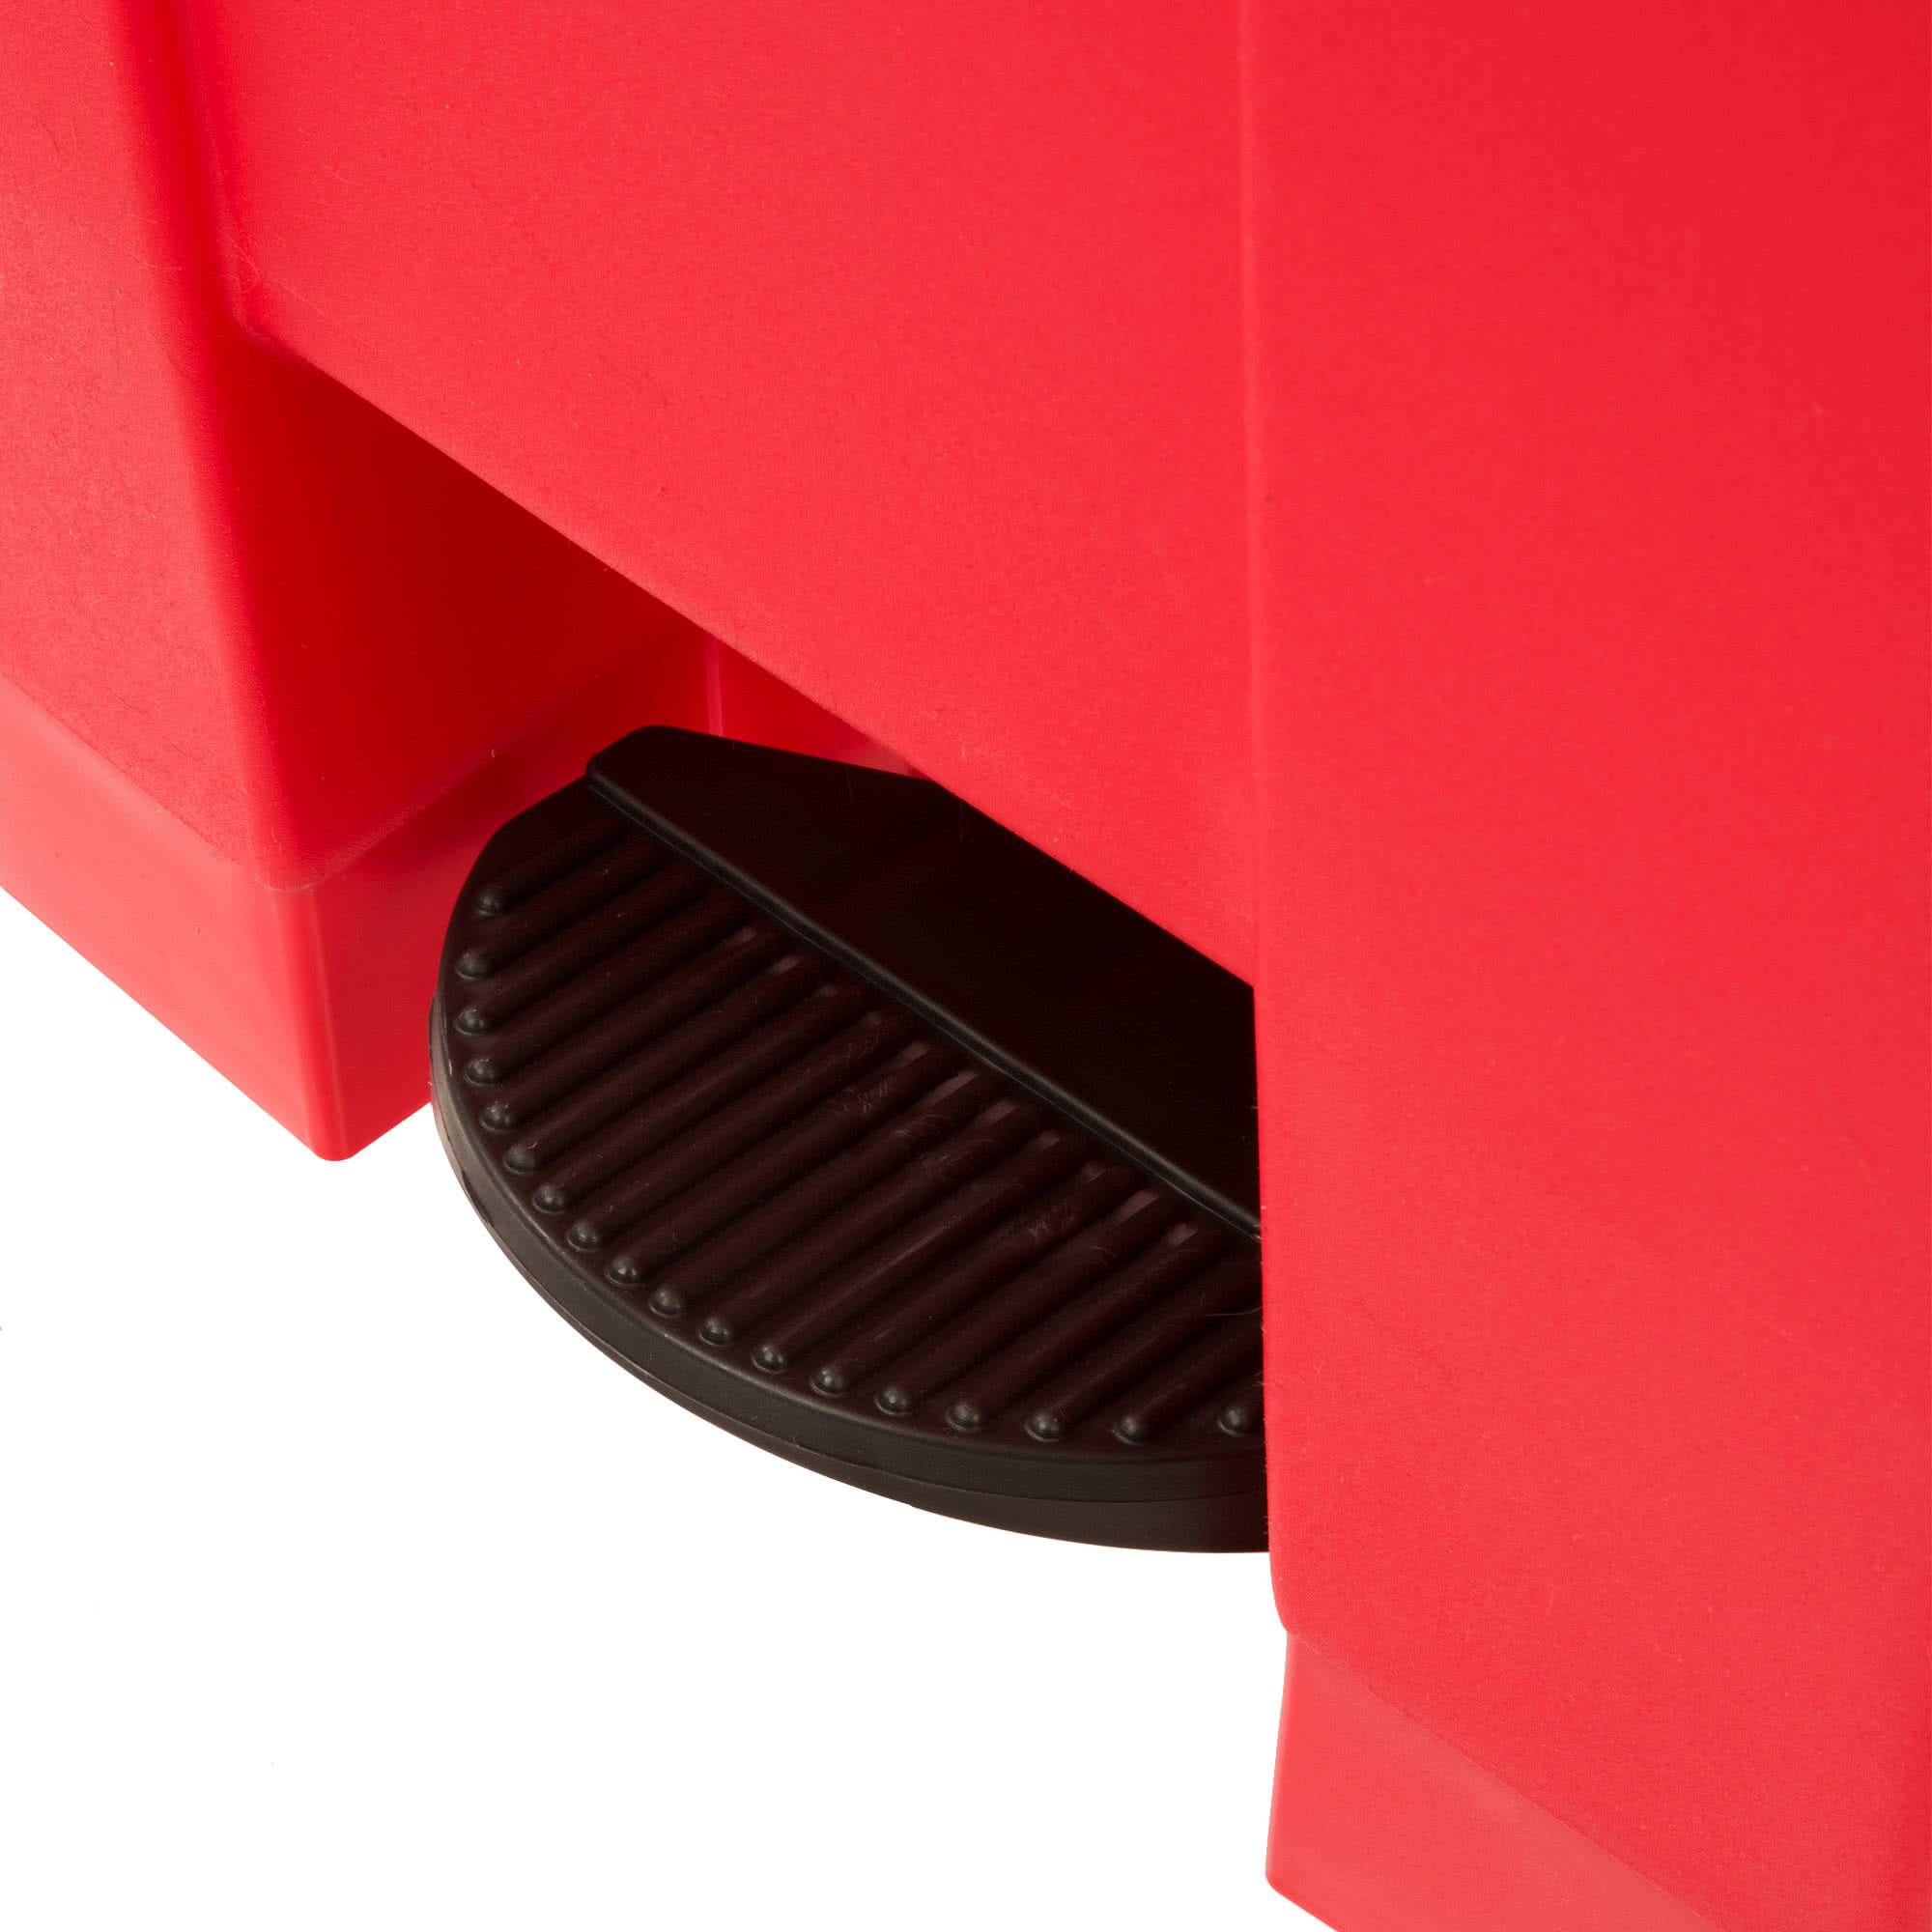 Rubbermaid FG614400RED basurero front Step-on con capacidad para 18 galones, color rojo con pedal